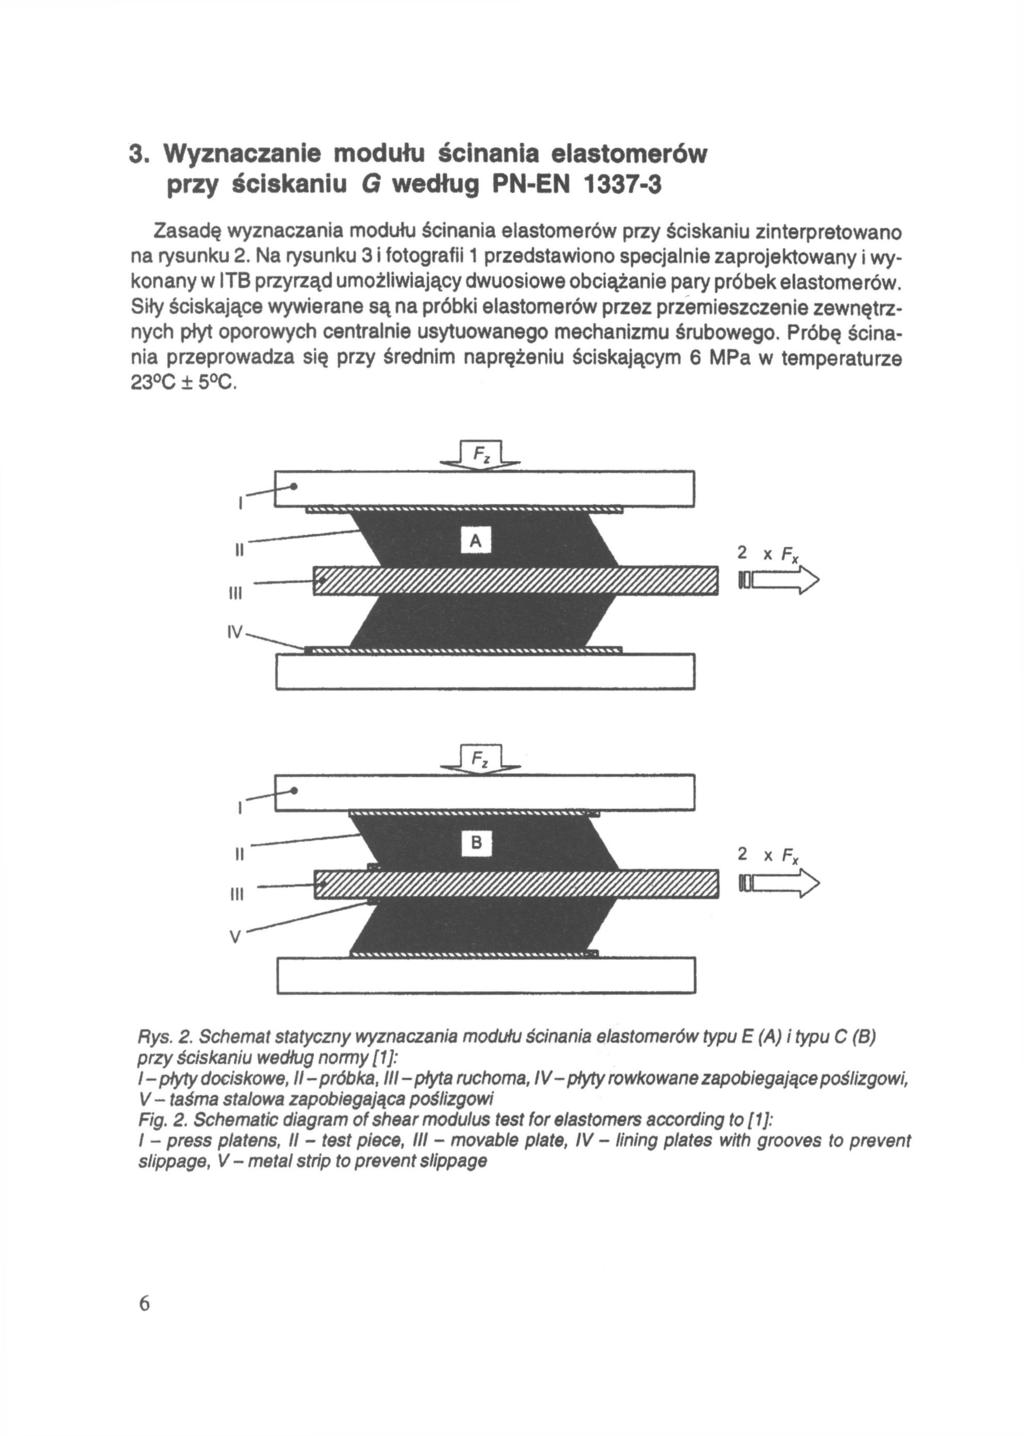 3. Wyznaczanie modułu ścinania elastomerów przy ściskaniu według PN-EN 1337-3 Zasadę wyznaczania modułu ścinania elastomerów przy ściskaniu zinterpretowano na rysunku 2.